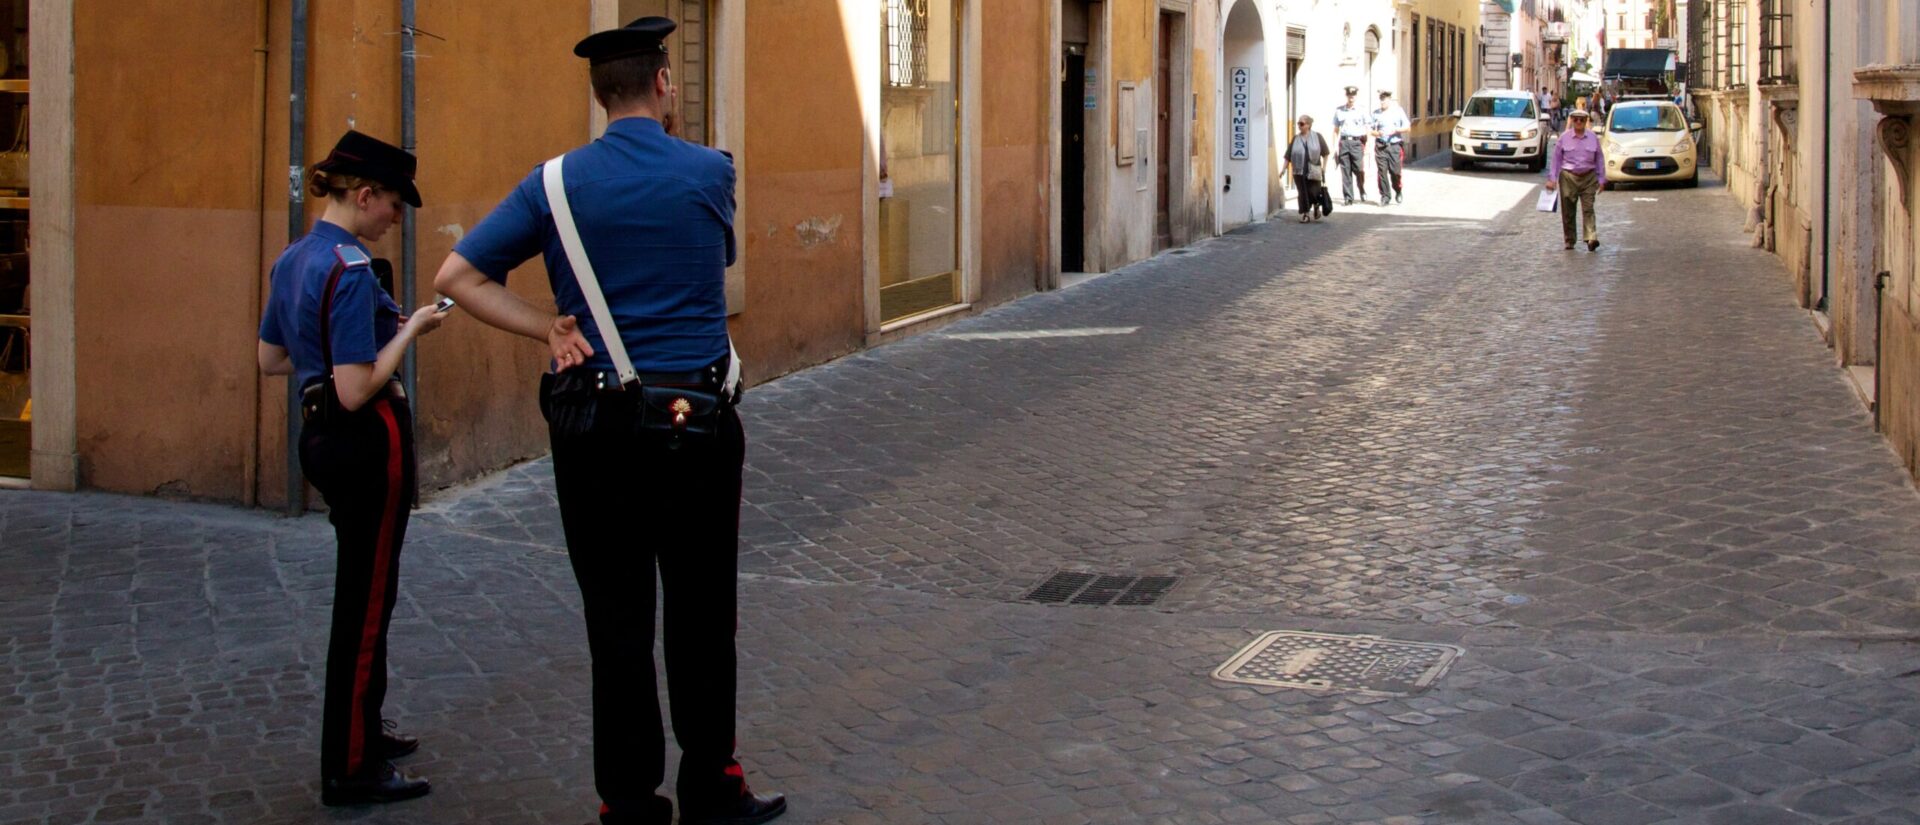 La police italienne surveille de près les islamistes radicaux, à Rome | photo d'illustration © Patrick Rasenberg/Flickr/CC BY-NC 2.0